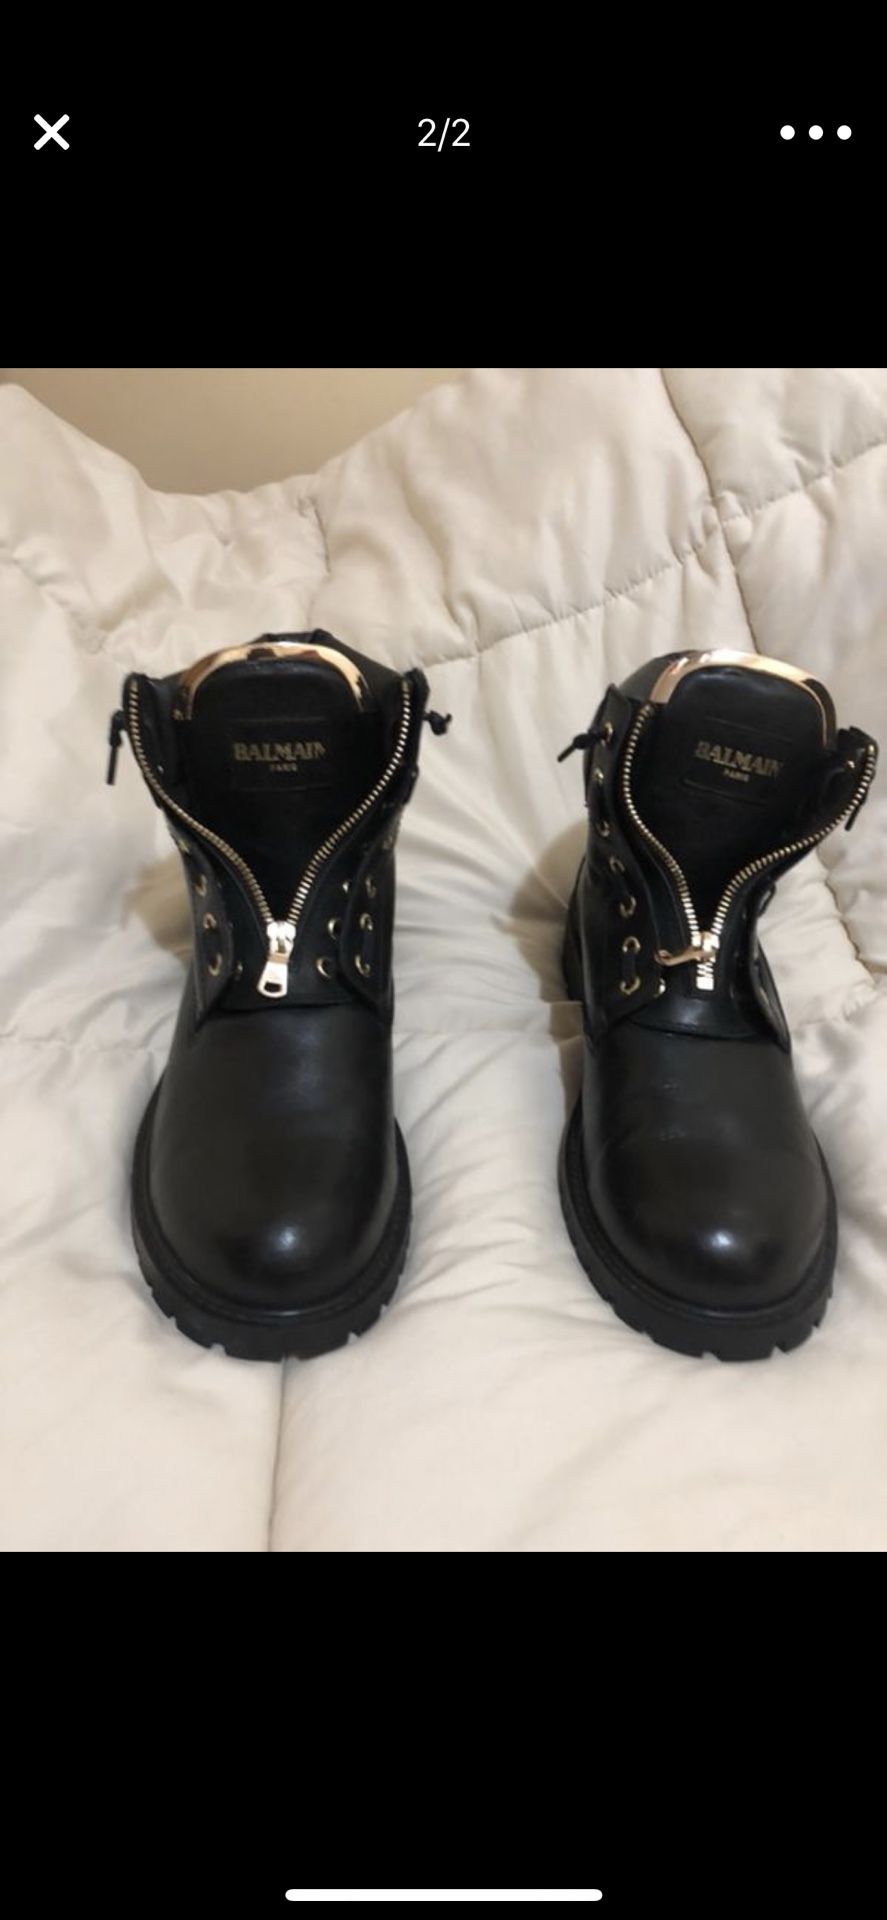 Balmain boots size 10